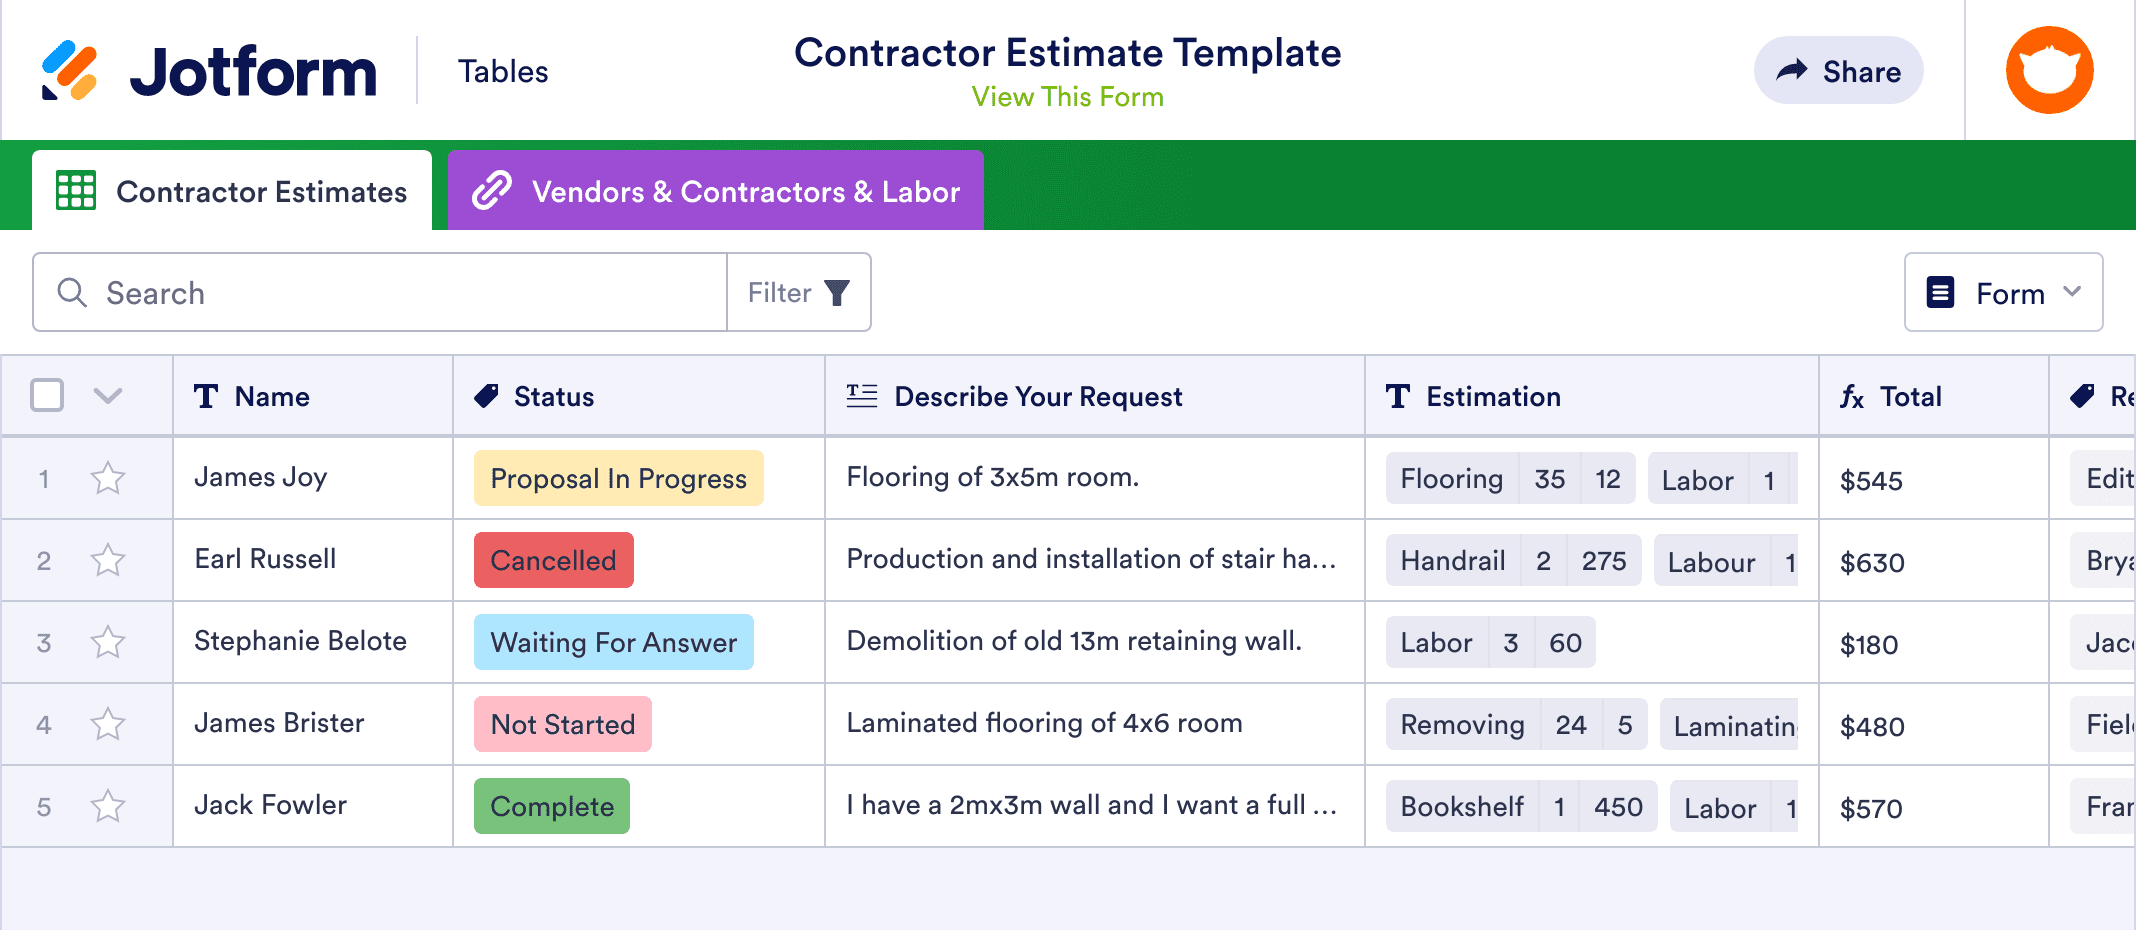 Contractor Estimate Template